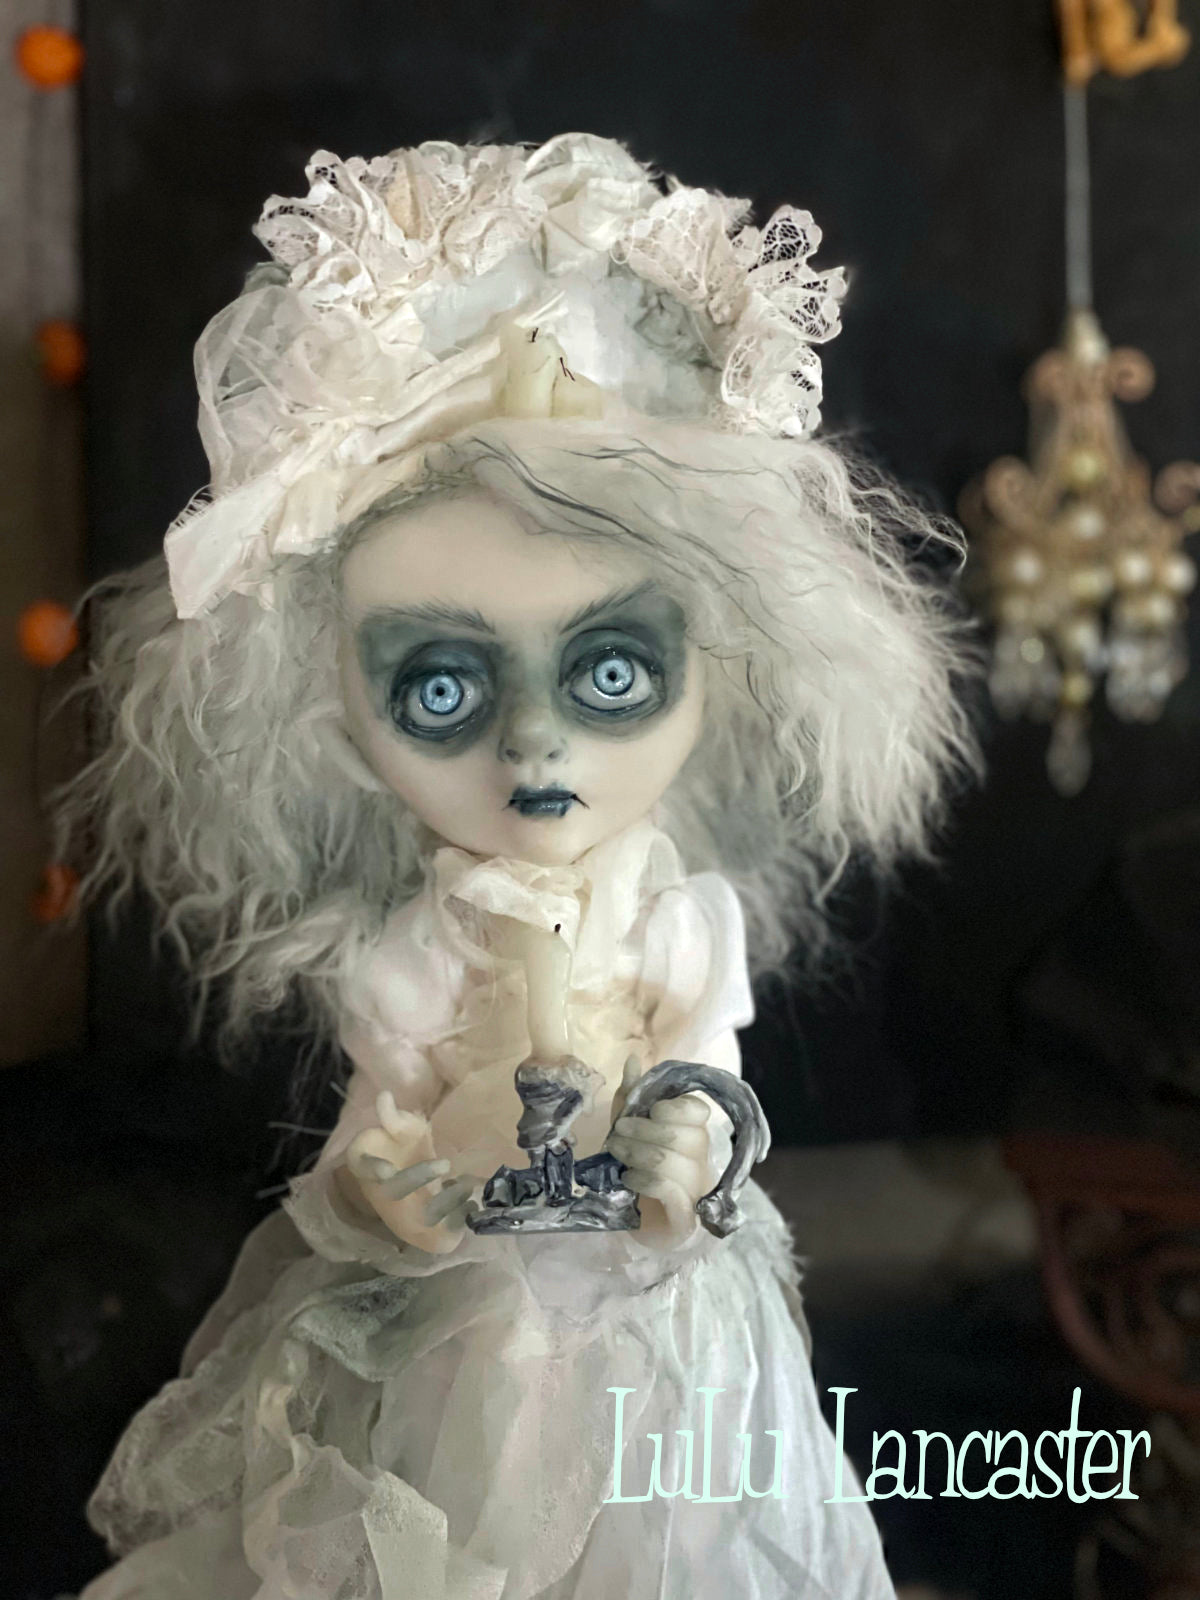 Pleasance Victorian ghostie Original LuLu Lancaster Art Dolls